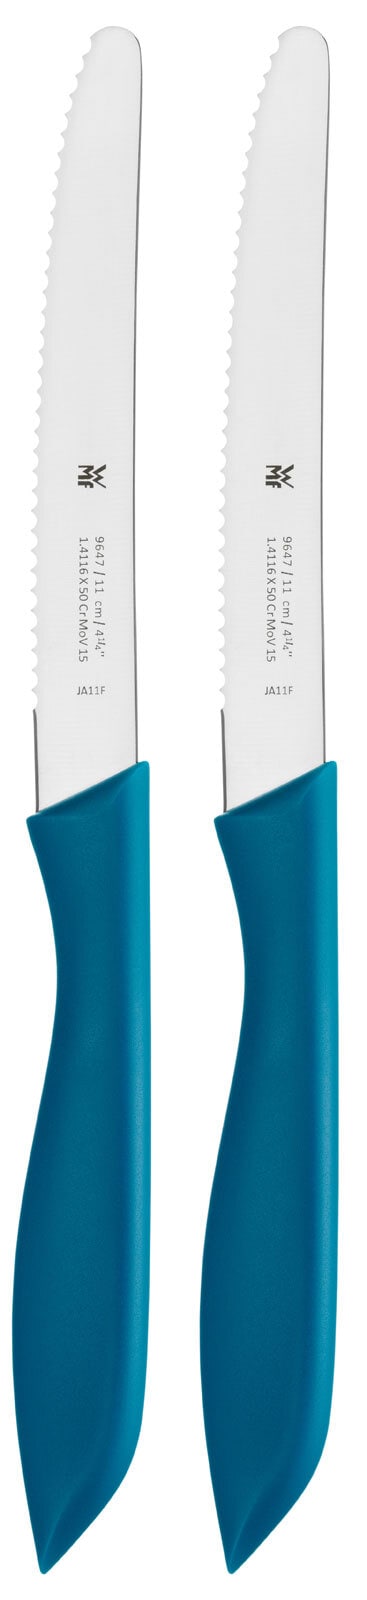 WMF Messer 2er Set Kunststoff blau